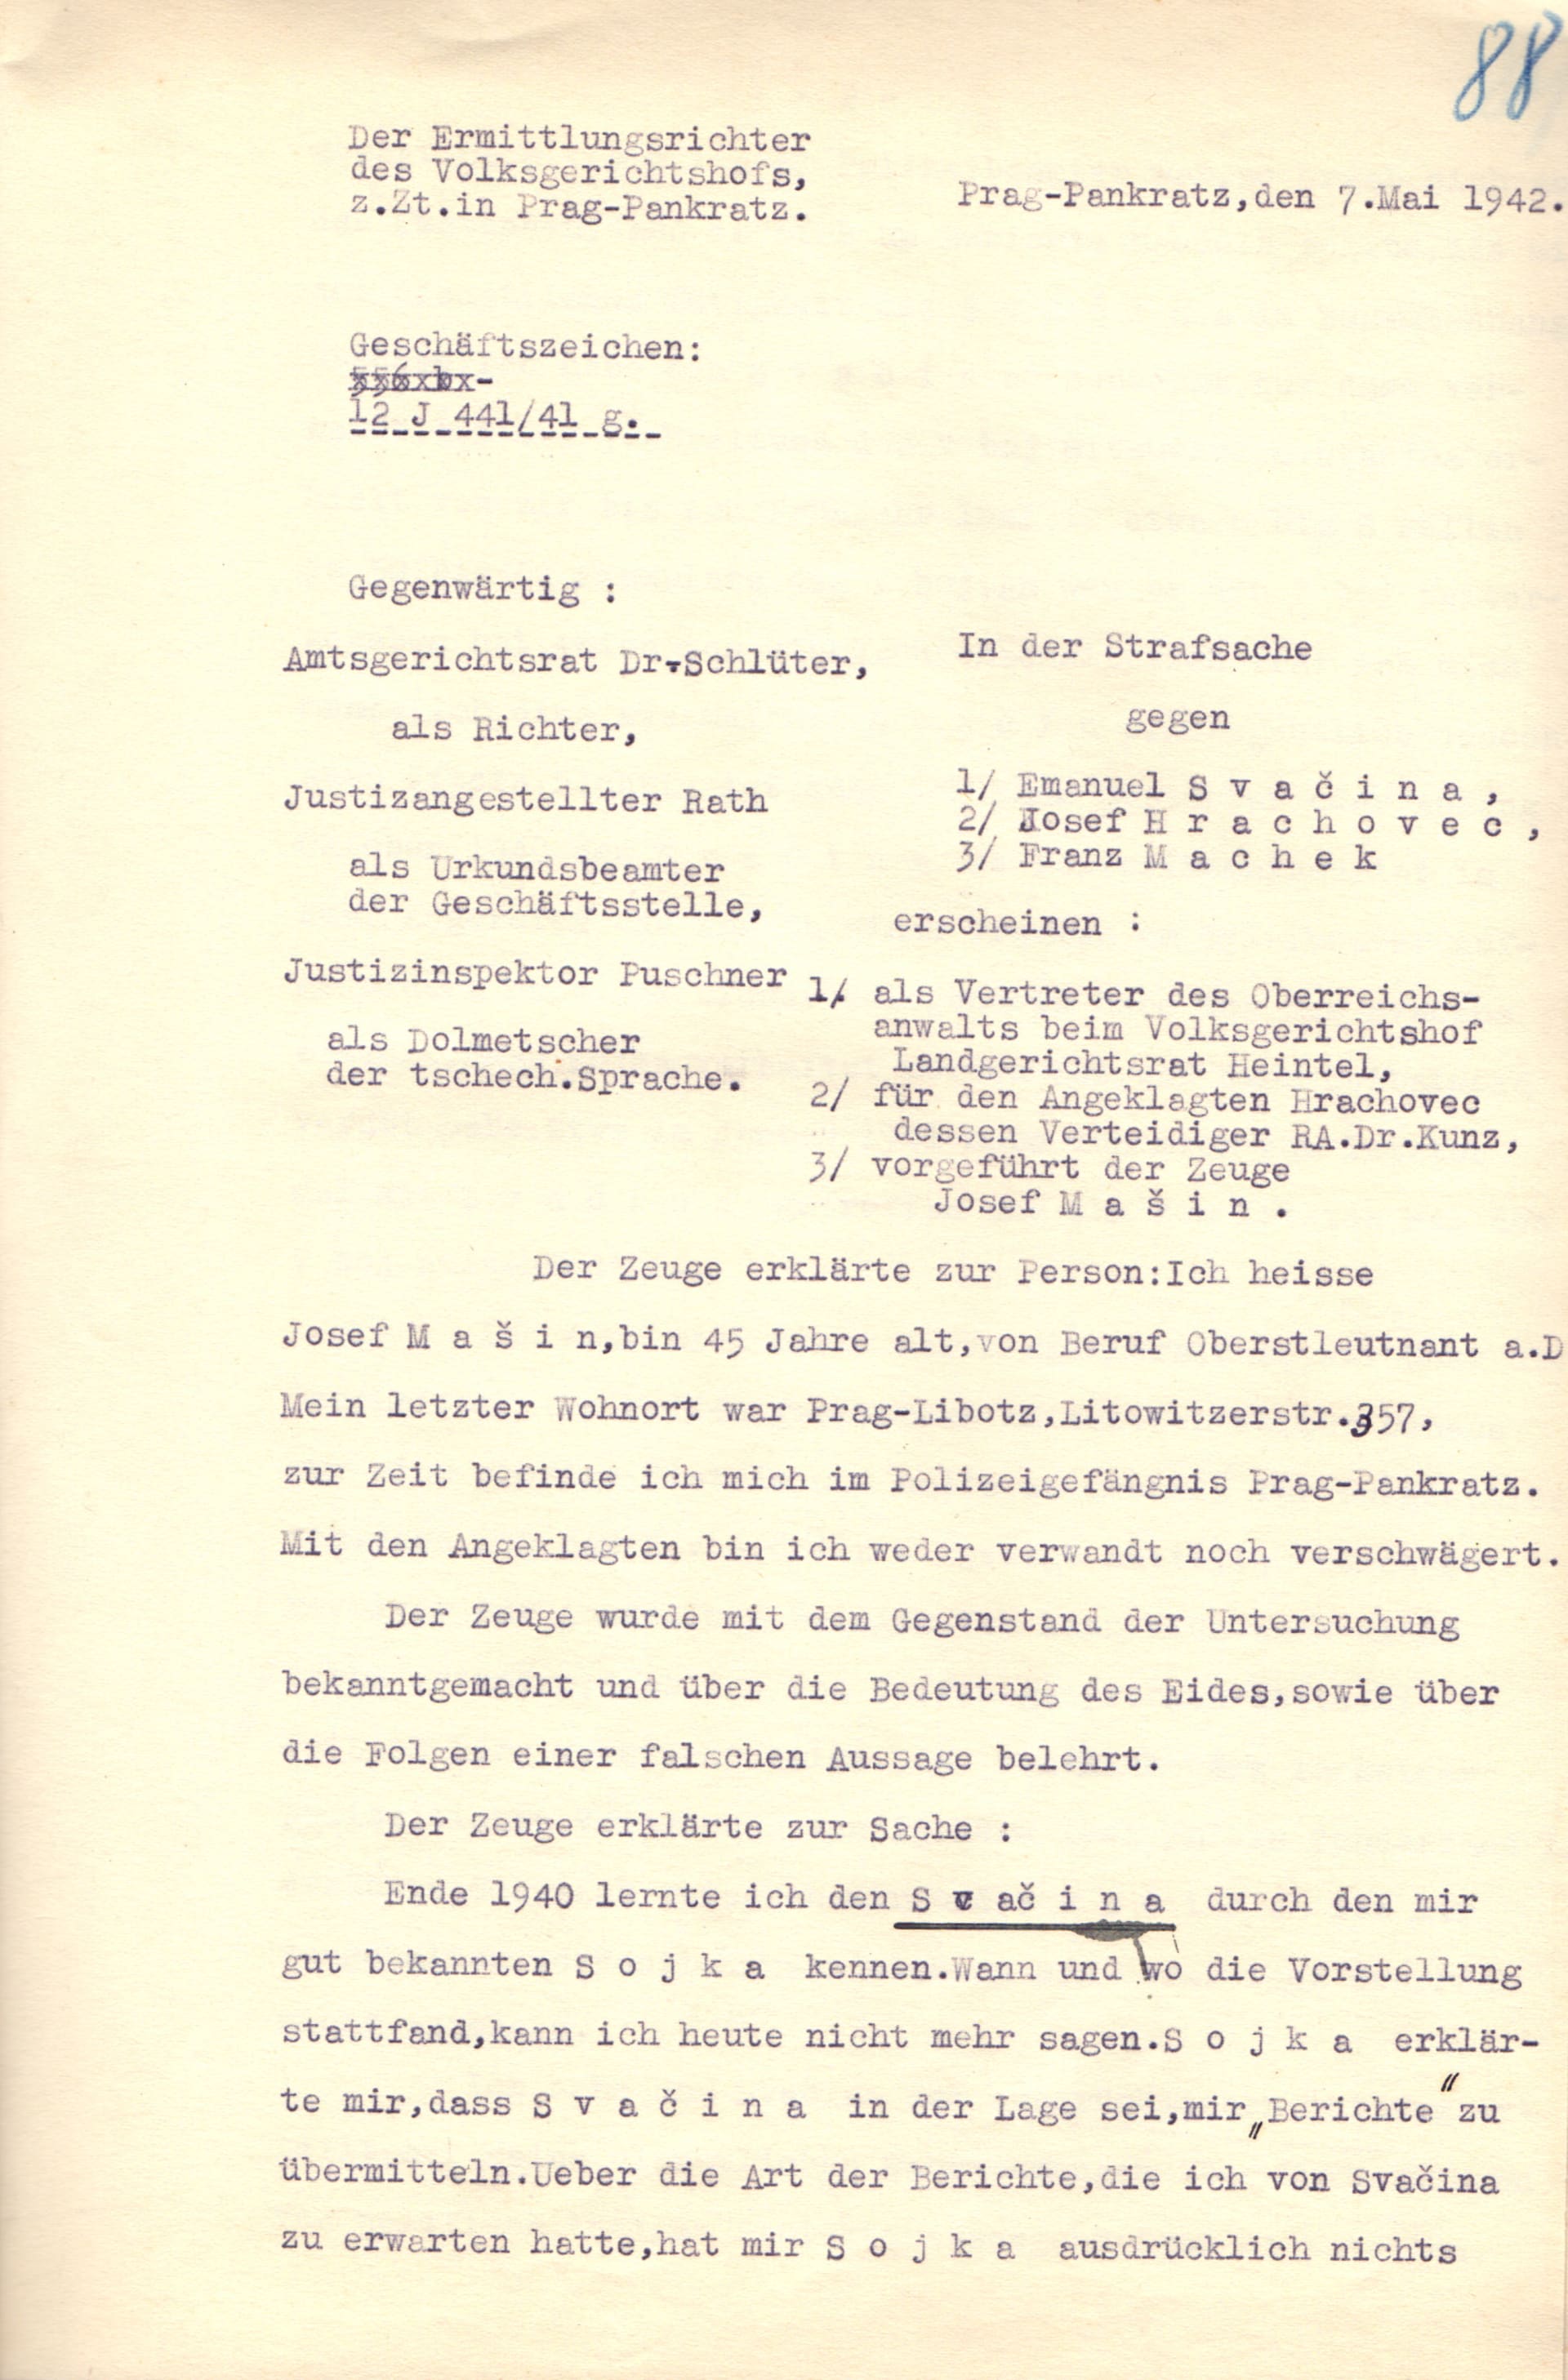 Výslechový protokol Josefa Mašína  z 7. května 1942 ve věznici na Pankráci, který objevil historik Uhlíř. Mašín byl popraven necelé dva měsíce poté. 